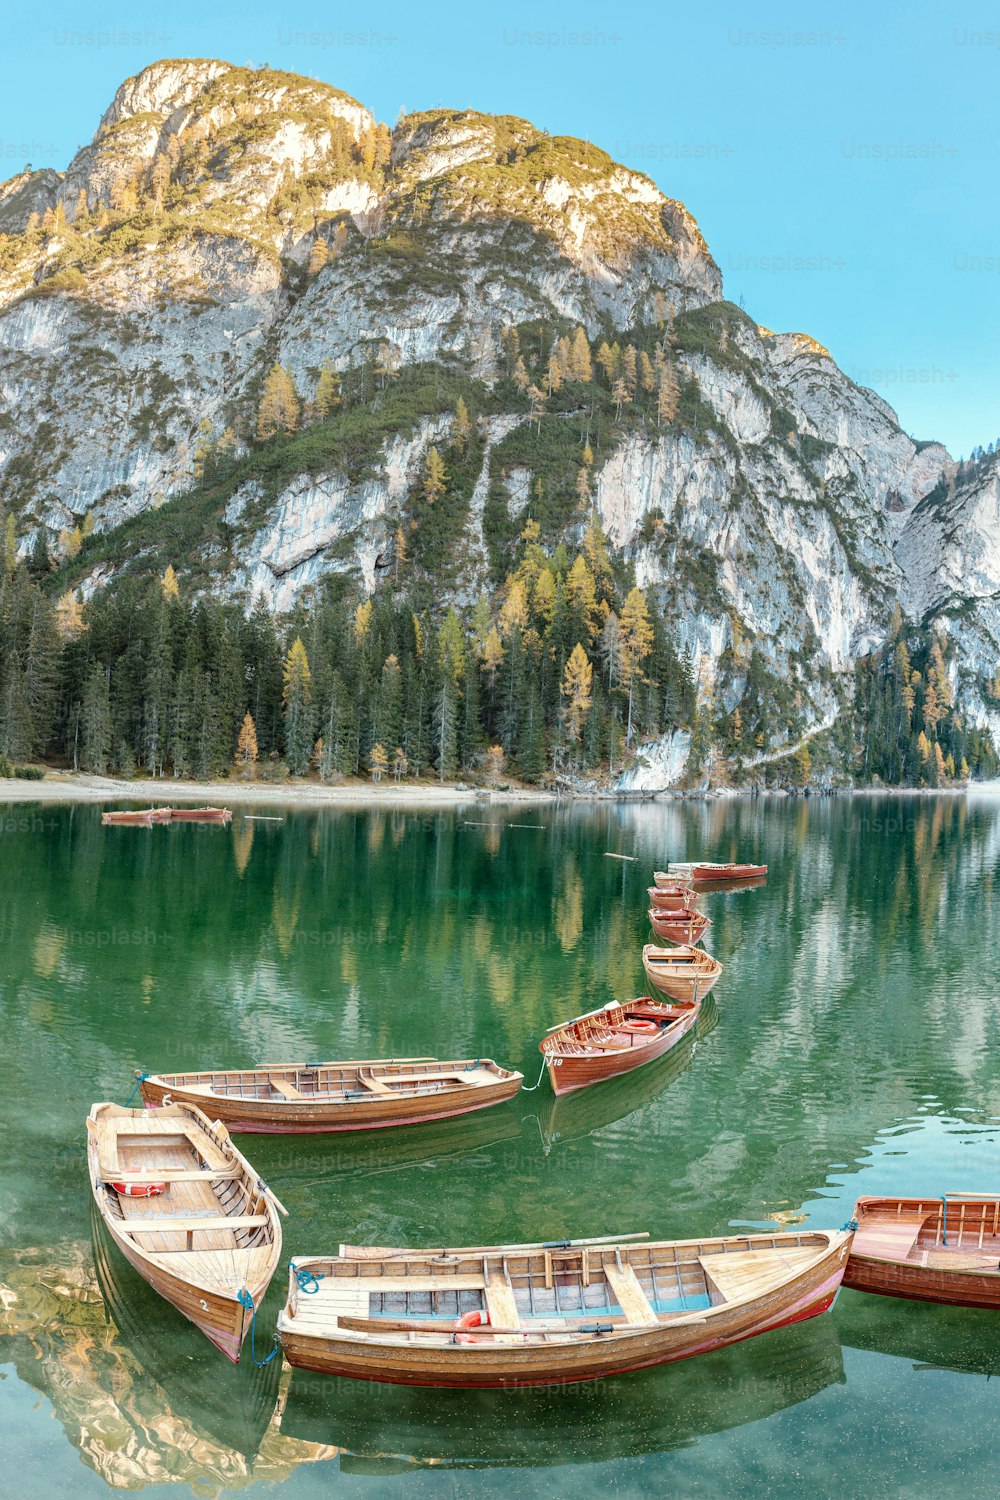 Un magico paesaggio panoramico con i colori calmi del famoso lago di Braies nelle Alpi dolomitiche durante la stagione autunnale. Una popolare attrazione turistica